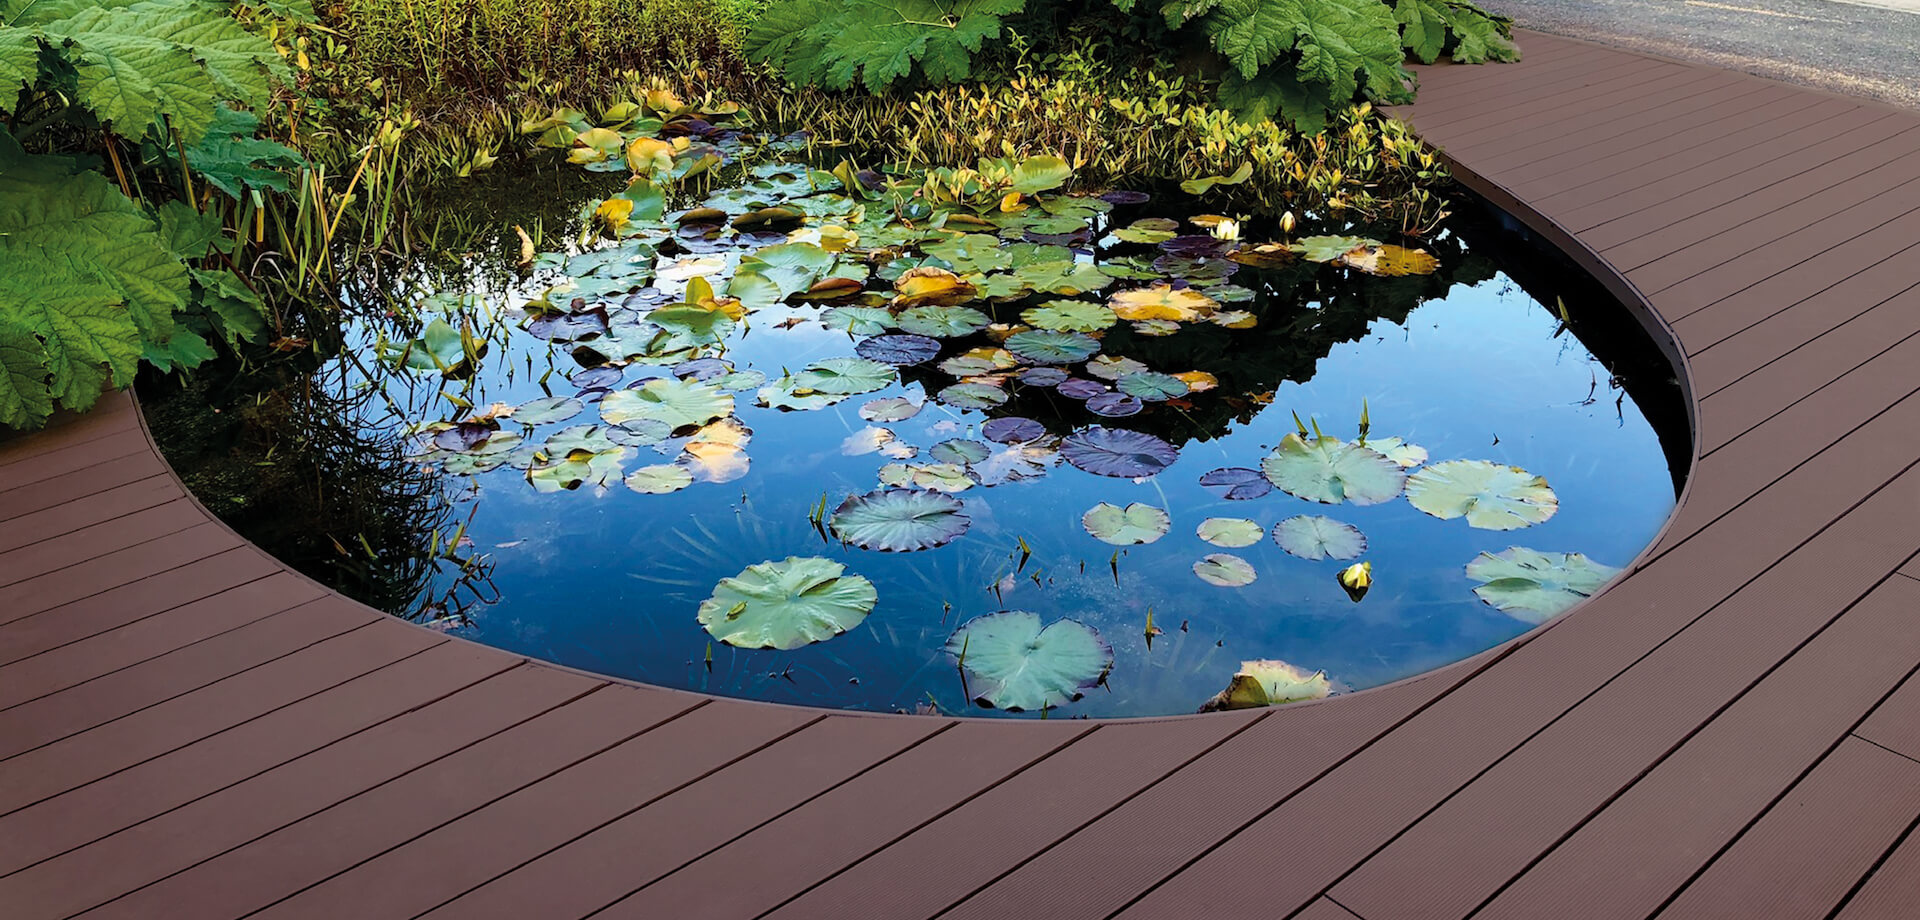 HD Deck® XS in a walnut finish installed around pond in landscaped gardens